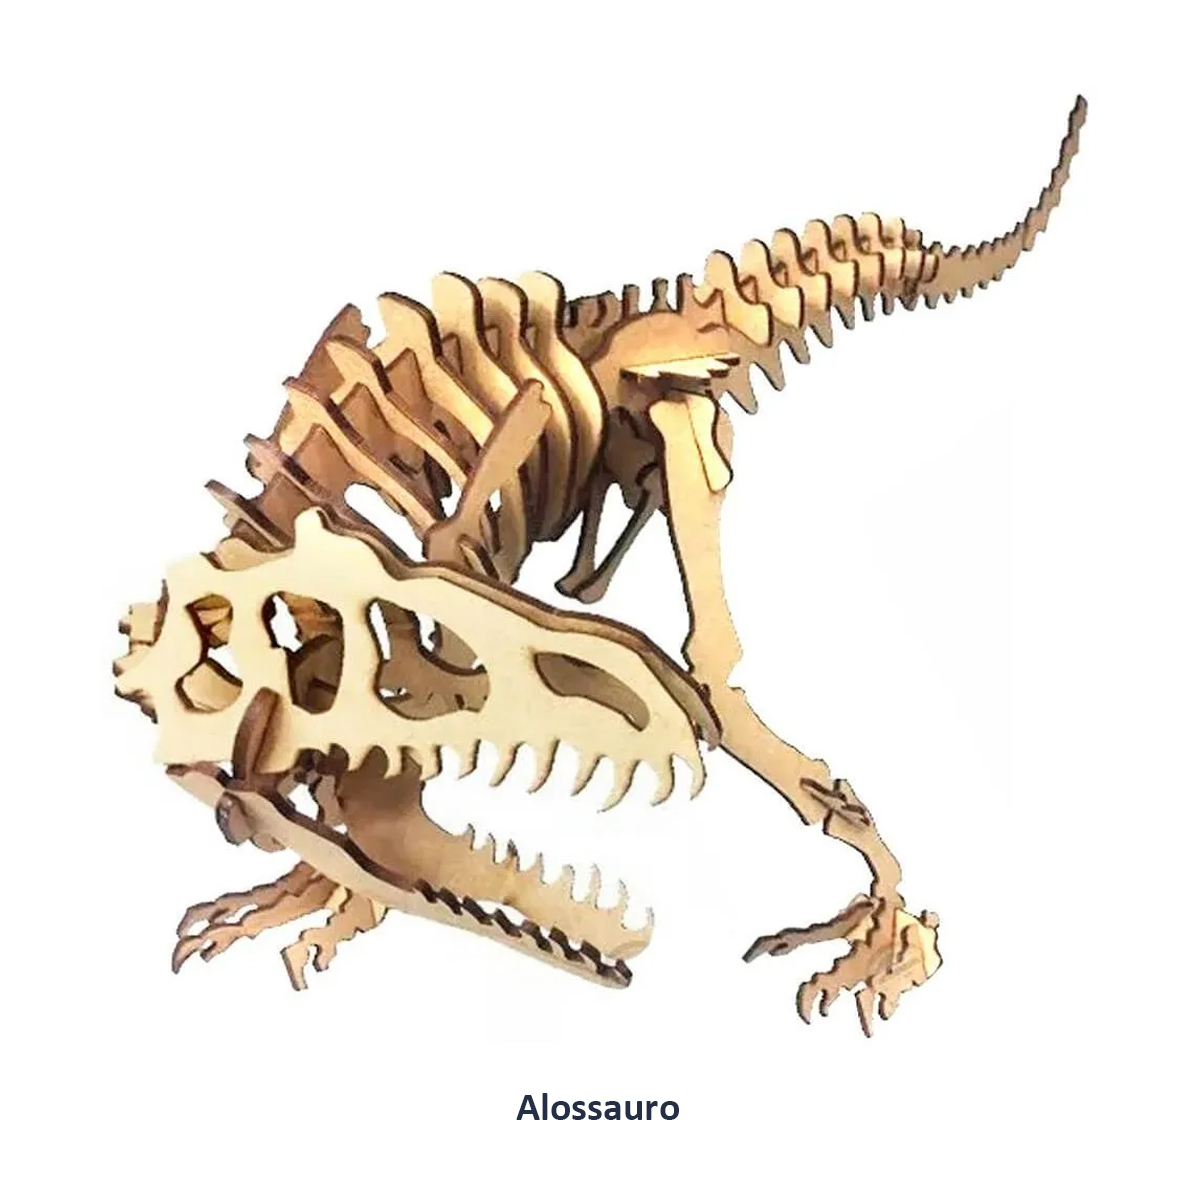 Quebra Cabeça 3D Dinossauro Alossauro - 48 Peças - MDF Cru - Corte a Laser - NEOMAXI